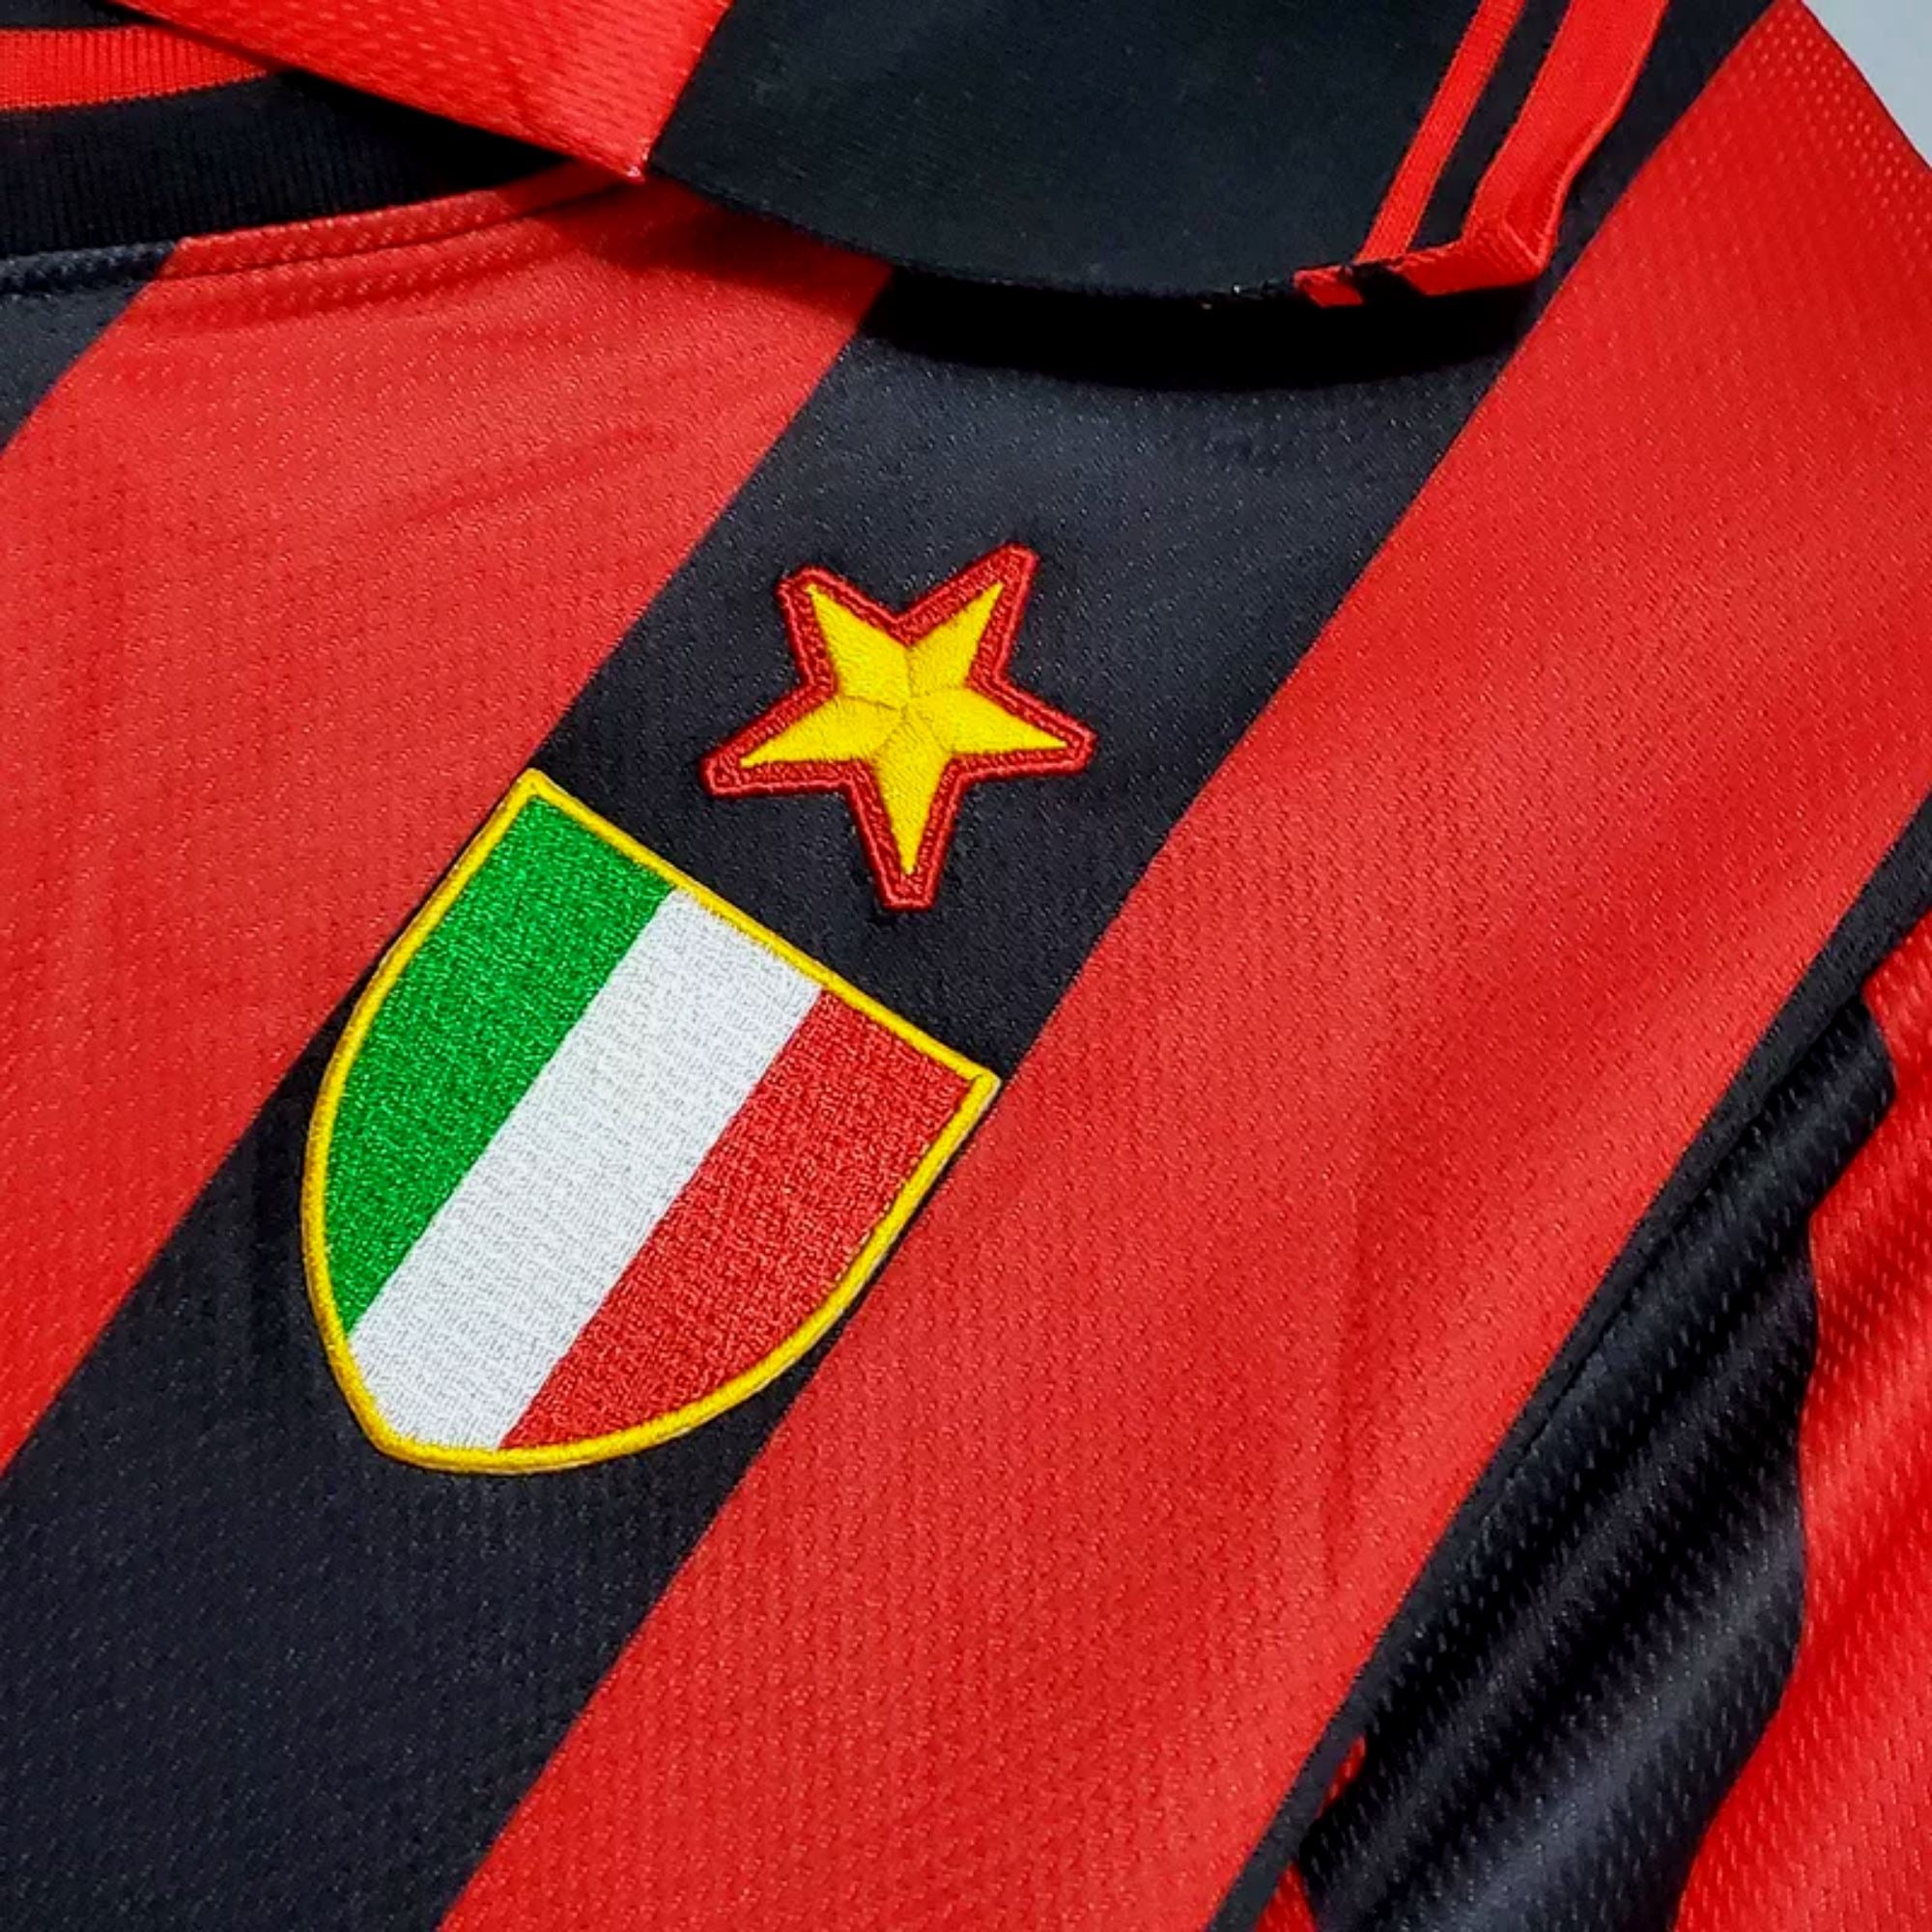 1996/97 AC Milan Baggio Jersey - ITASPORT